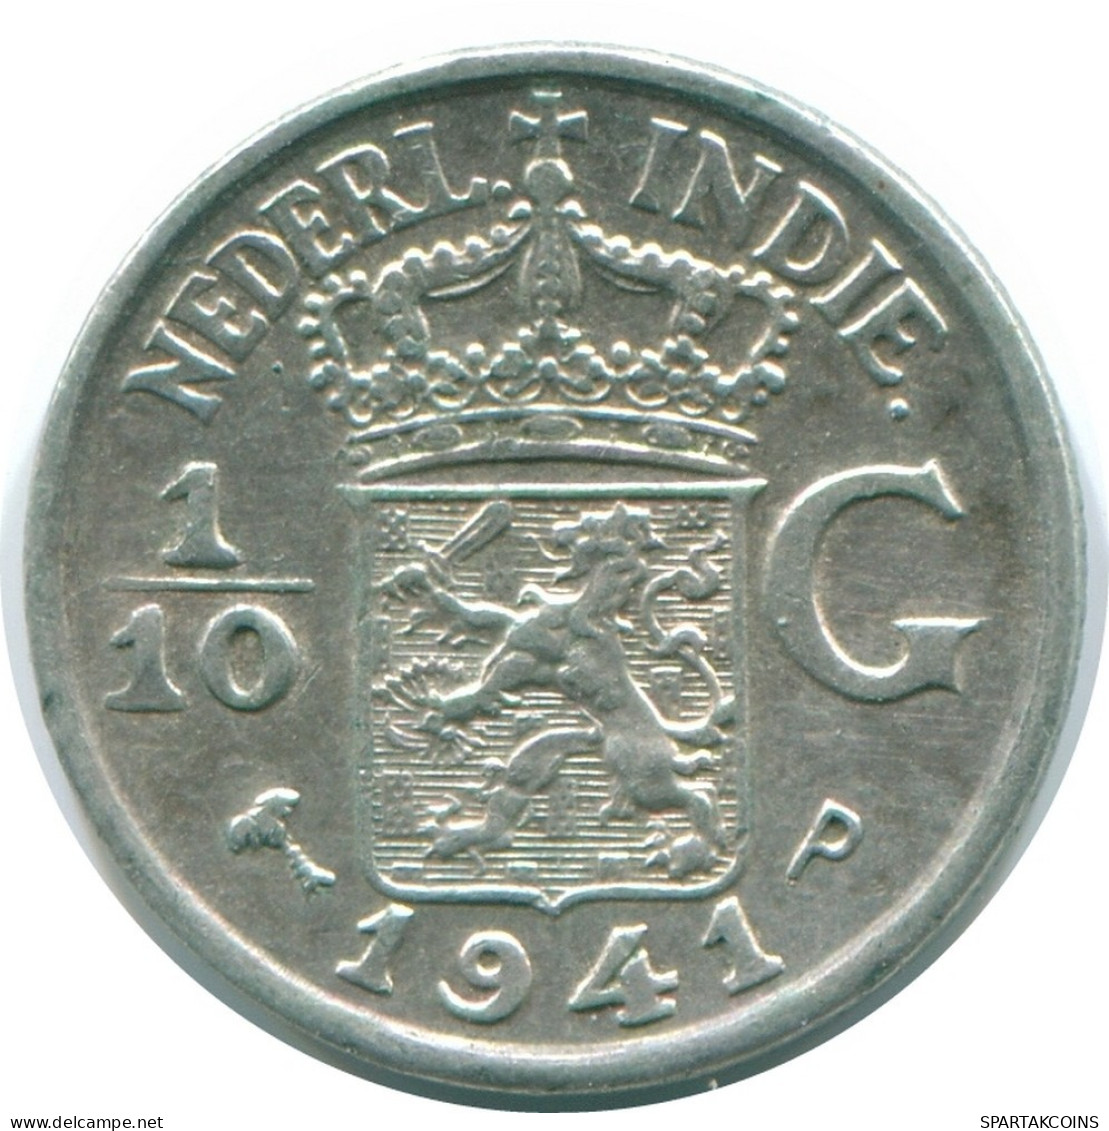 1/10 GULDEN 1941 P NIEDERLANDE OSTINDIEN SILBER Koloniale Münze #NL13676.3.D.A - Niederländisch-Indien